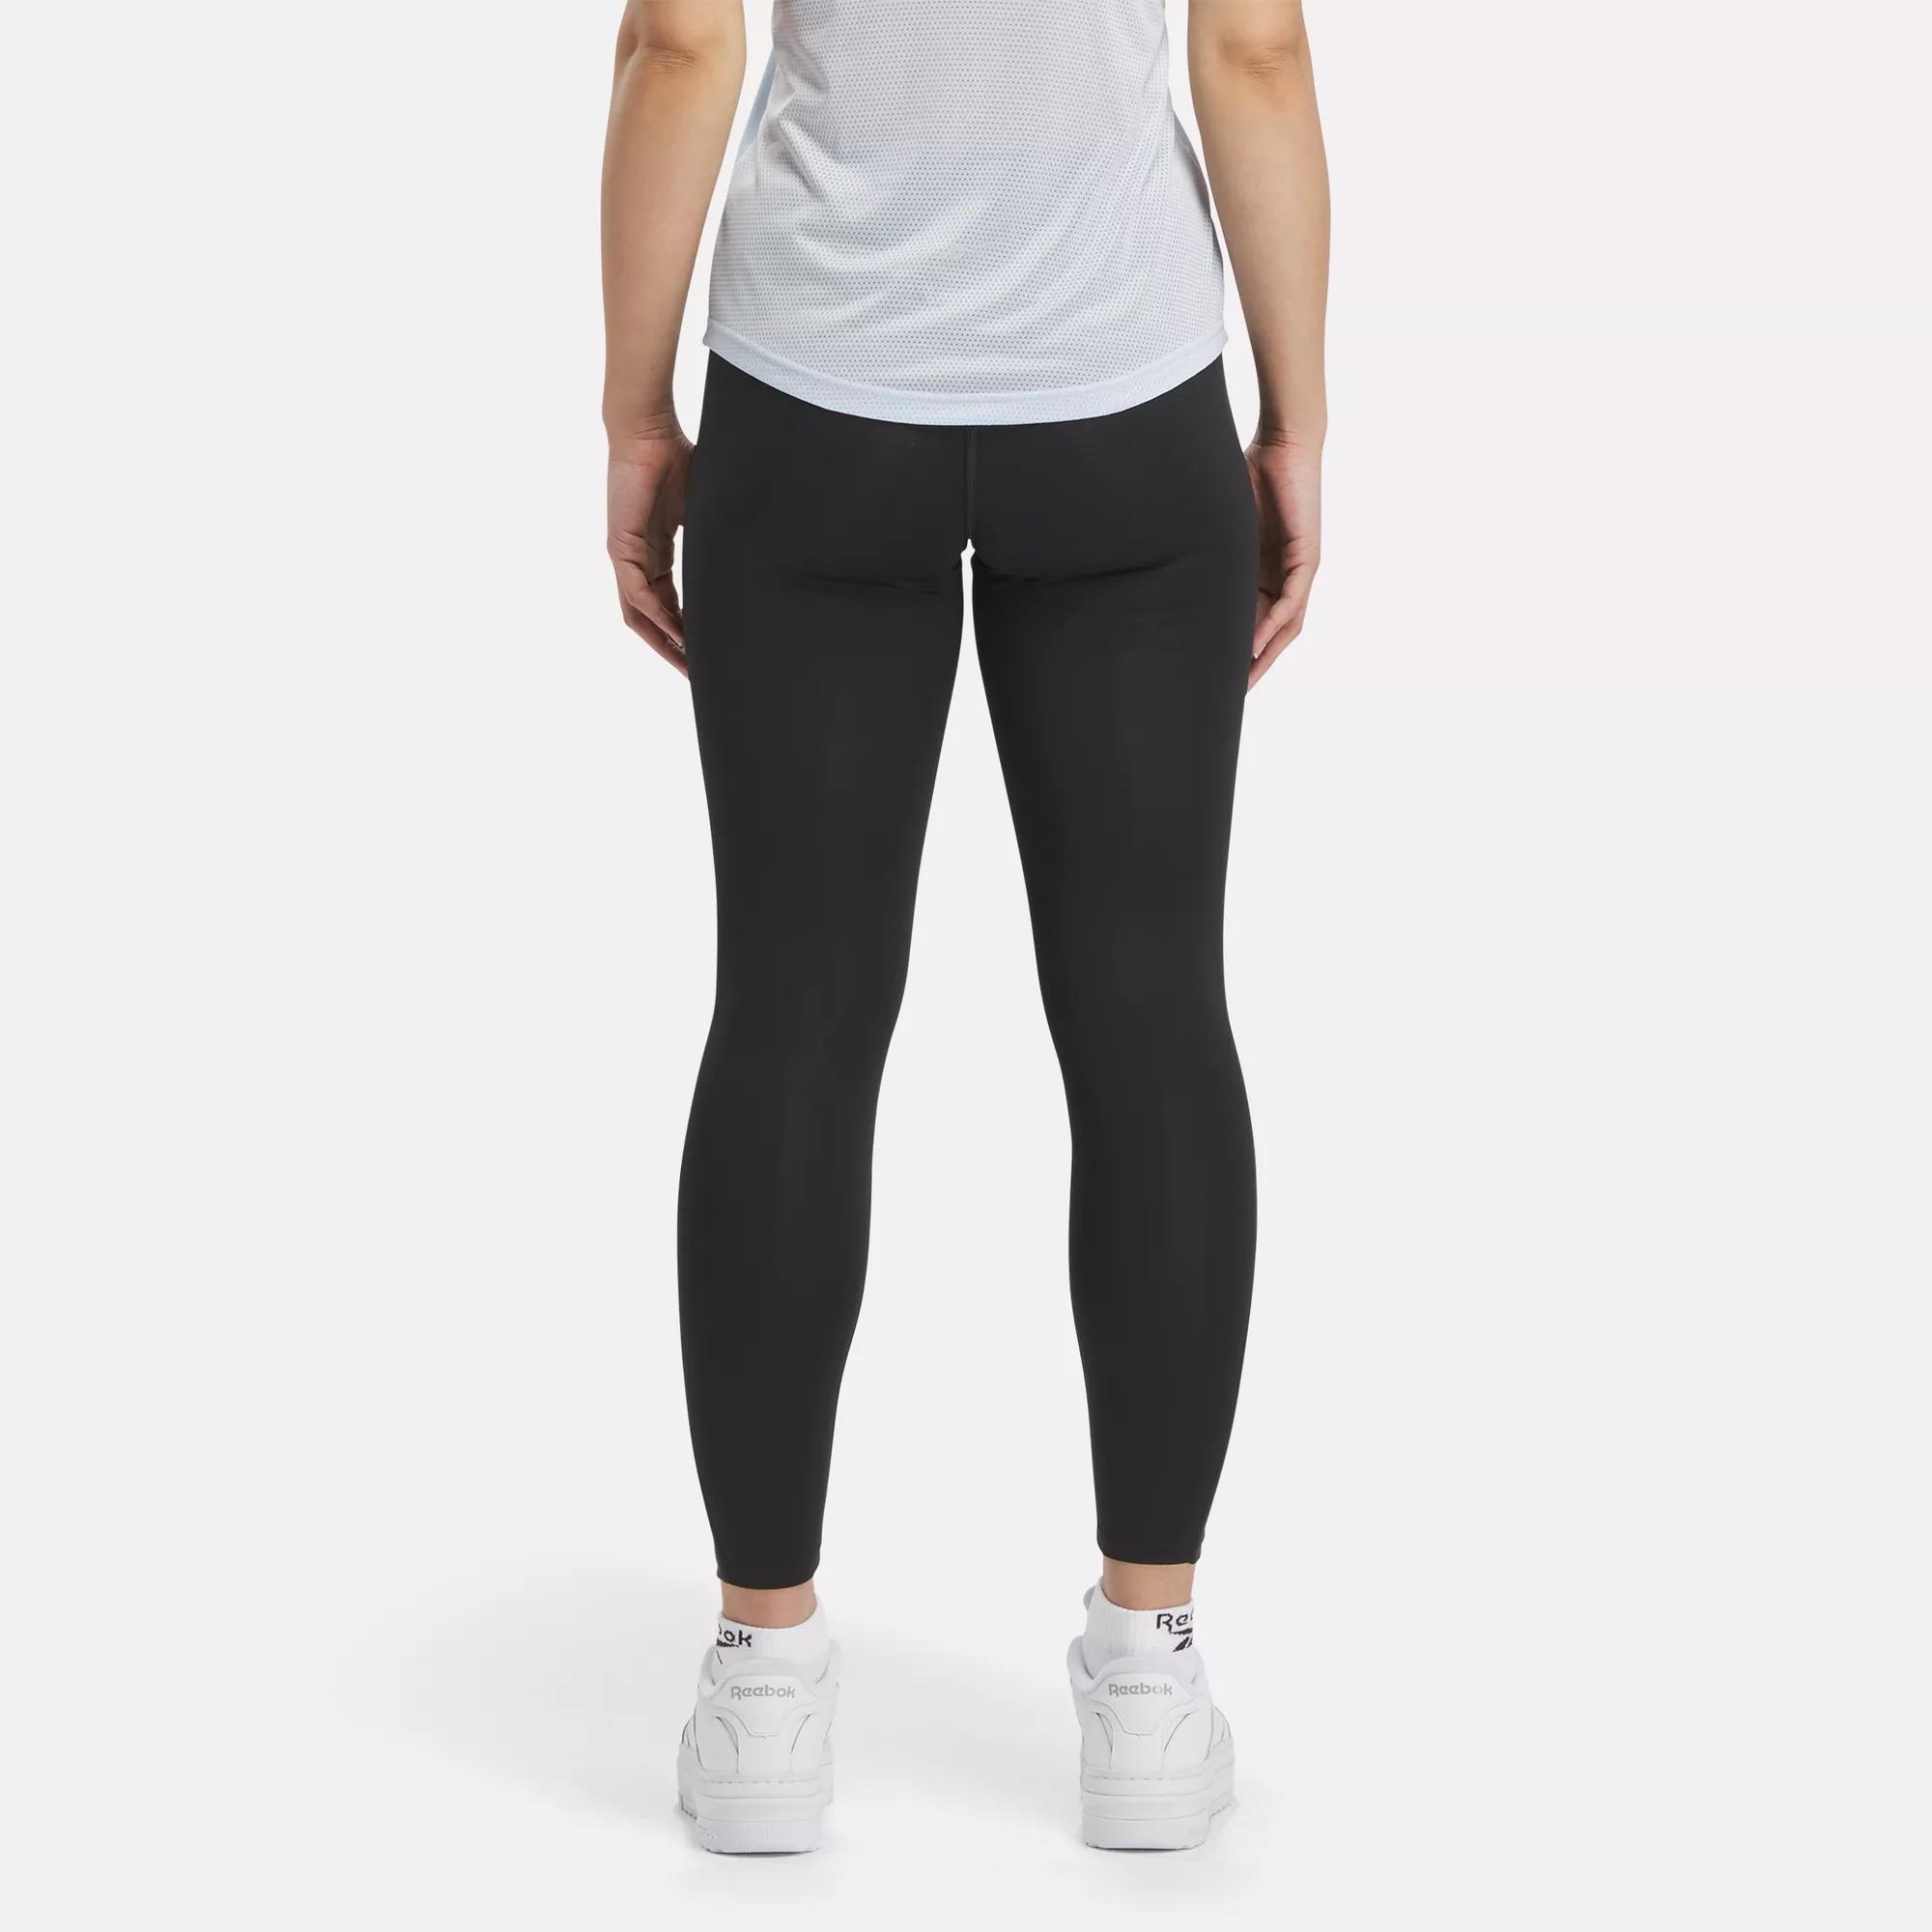 Women's High-waist Mesh Fitness Leggings Black X Large - White